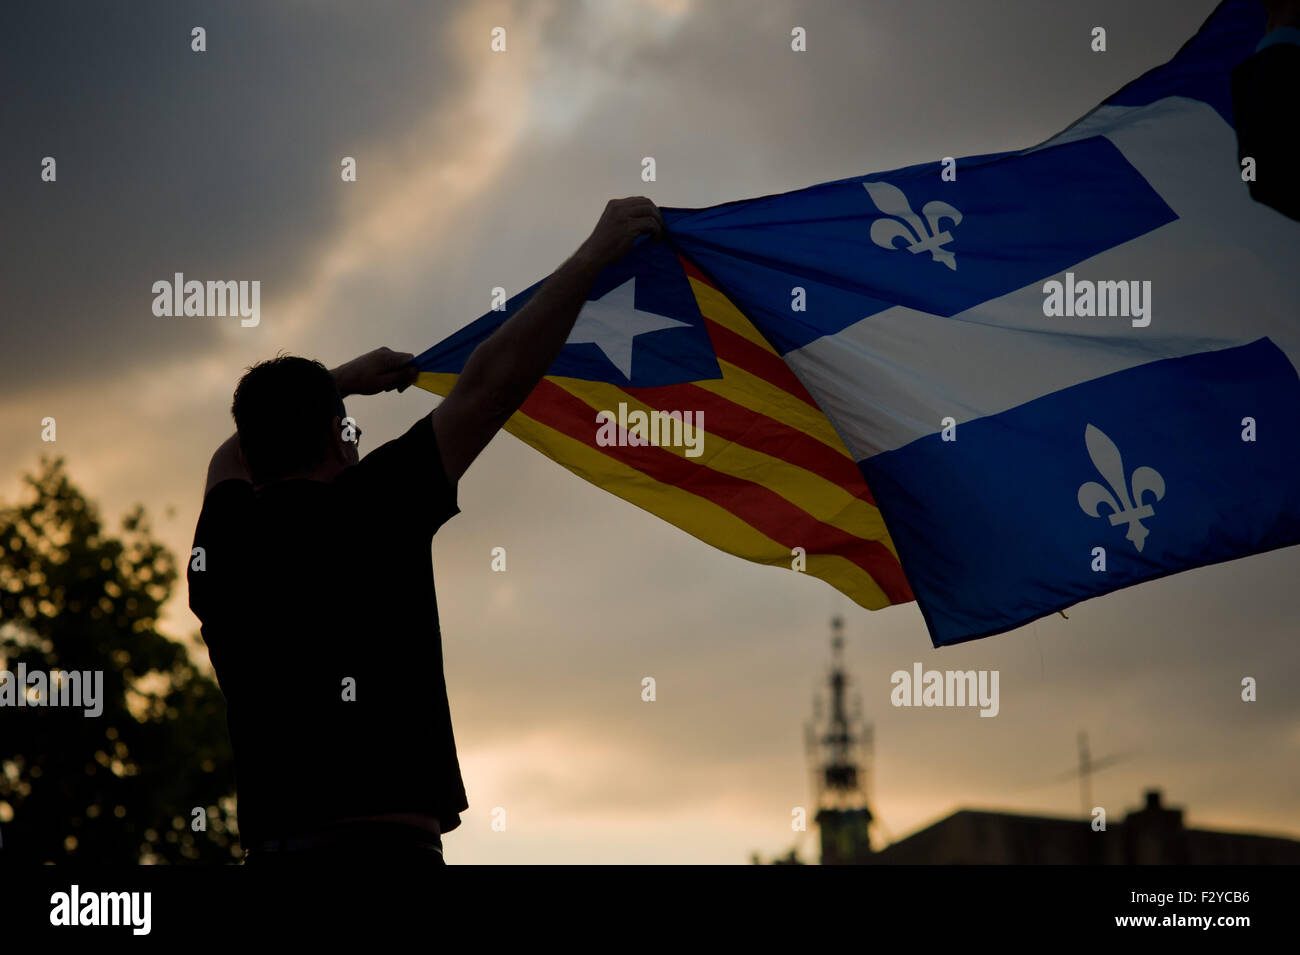 Barcelone, Catalogne, Espagne. 25 Septembre, 2015. Un homme détient un estelada drapeau indépendantiste (catalan) et un drapeau du Québec au cours de la dernière campagne de rallye 'Junts pel Si' (ensemble pour Oui) à Barcelone le 25 septembre, 2015. Dimanche prochain auront lieu des élections régionales en Catalogne. Les sondages indiquent que l'indépendance parties pourraient obtenir la majorité absolue. Crédit : Jordi Boixareu/ZUMA/Alamy Fil Live News Banque D'Images